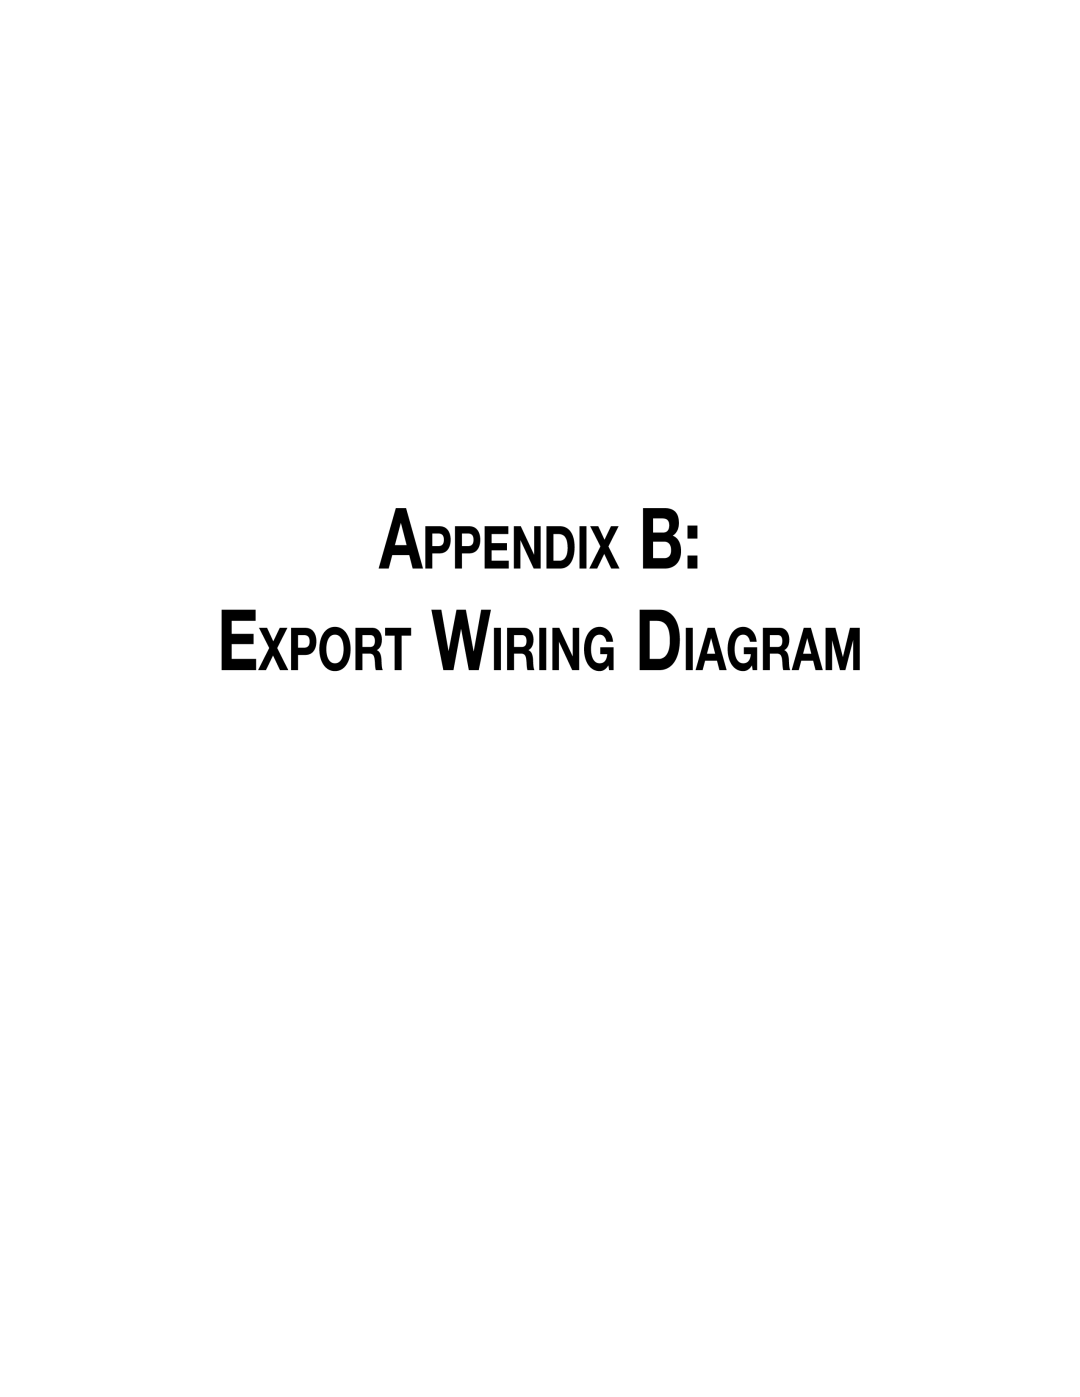 Hill Phoenix P074749F dimensions Appendix B Export Wiring Diagram 